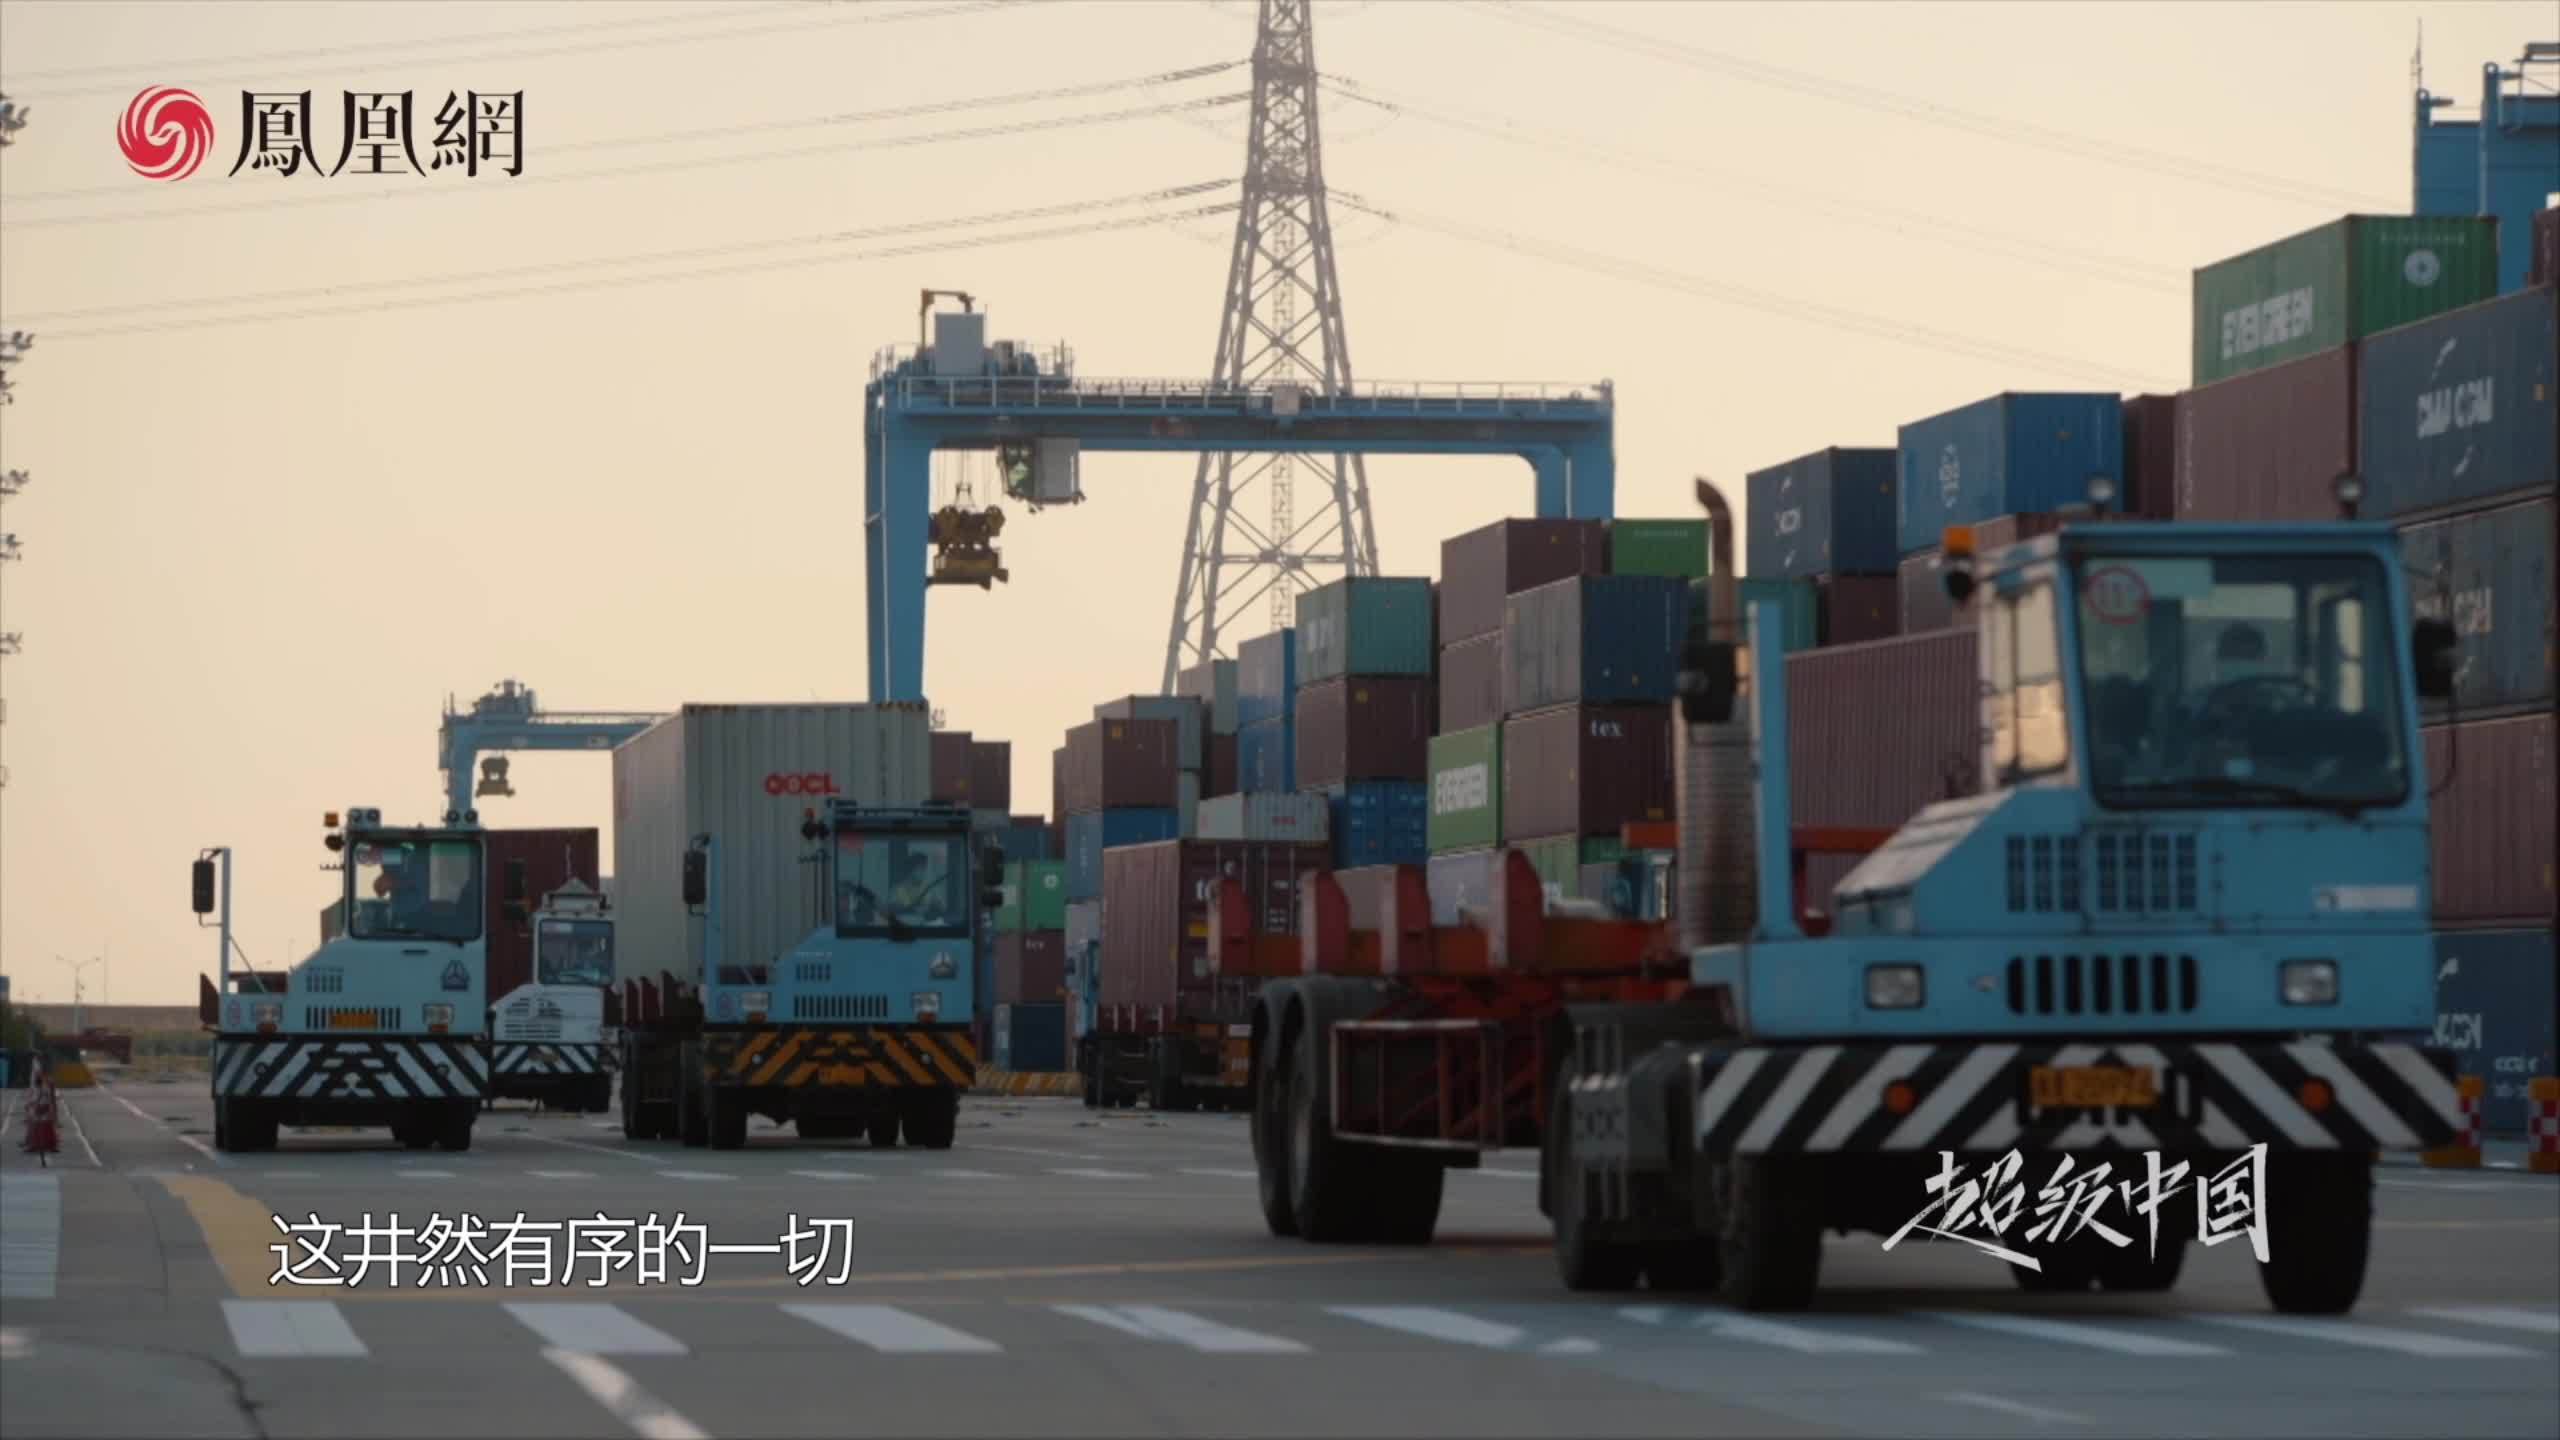 宁波梅山港区智慧化码头40%实现远程控制